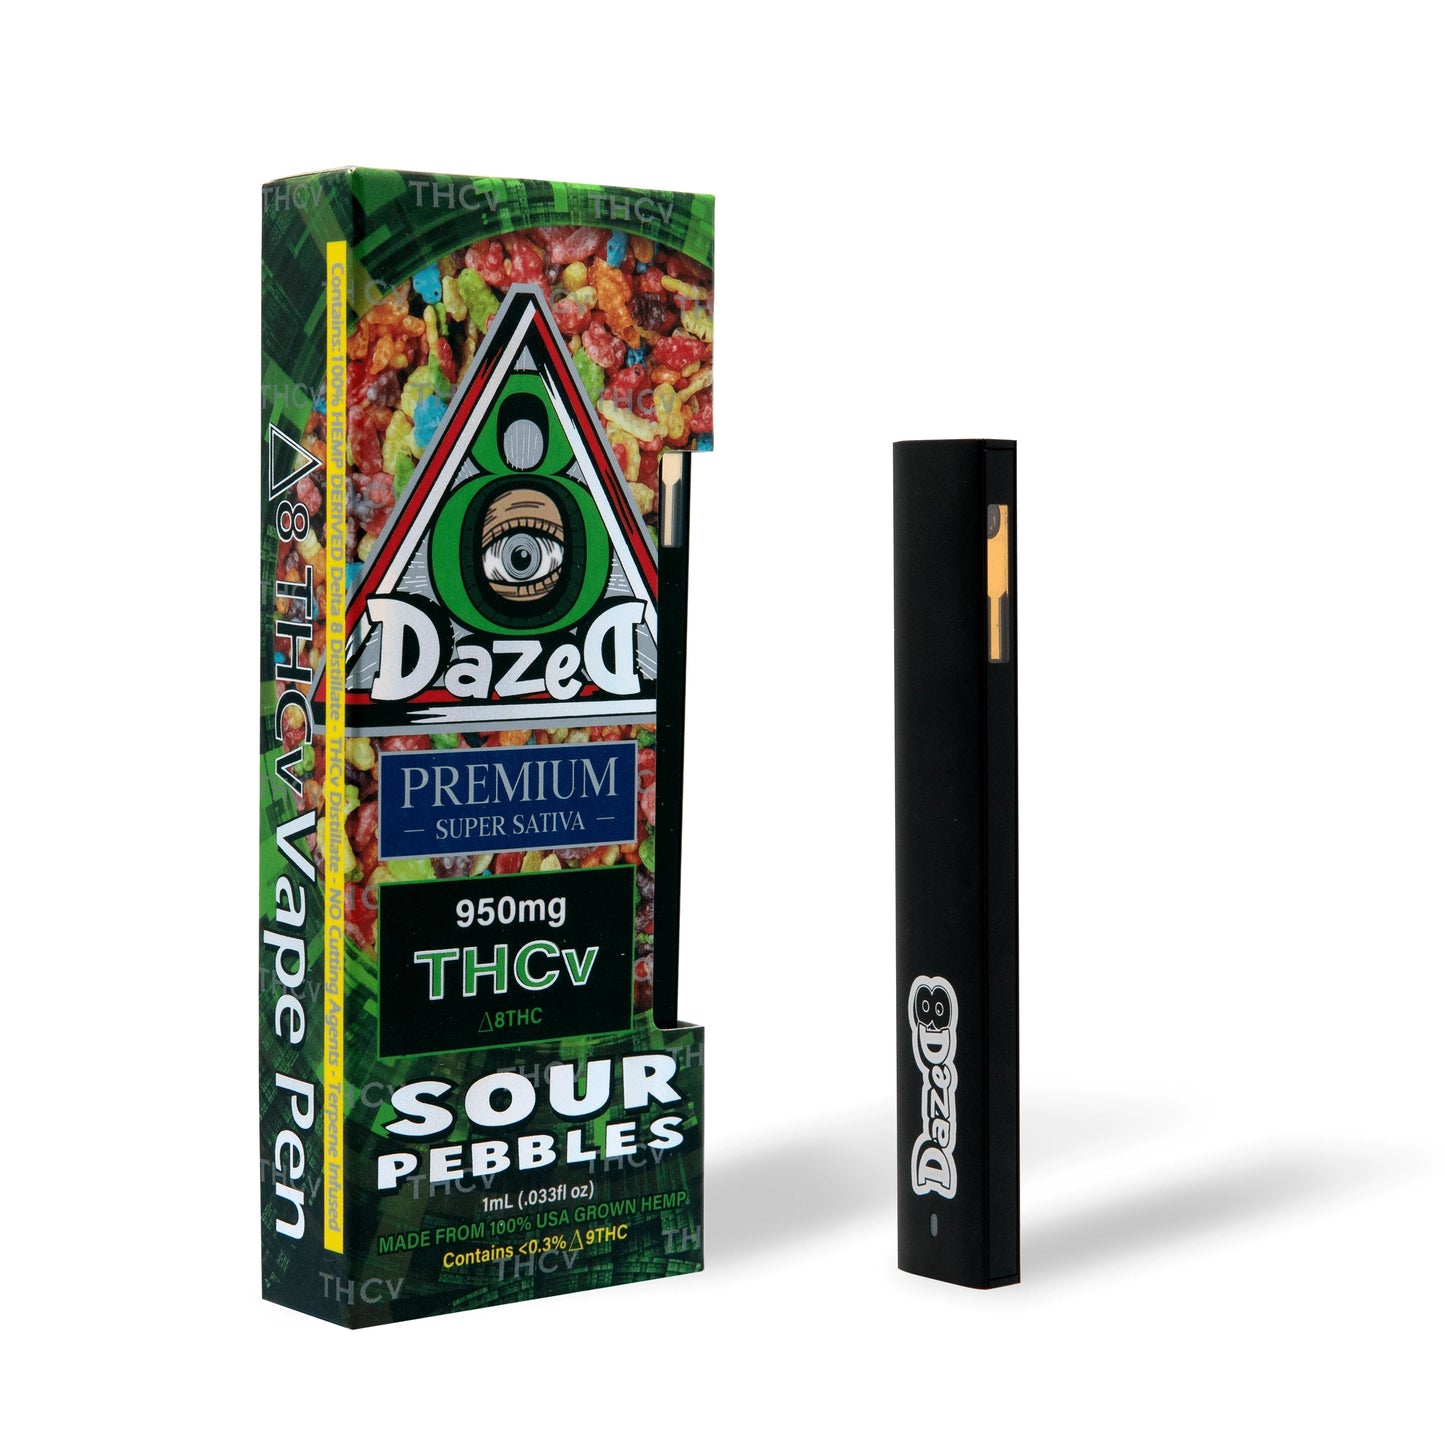 DazeD8 Sour Pebbles Delta 8 THCV Disposable (1g) Best Sales Price - Vape Pens